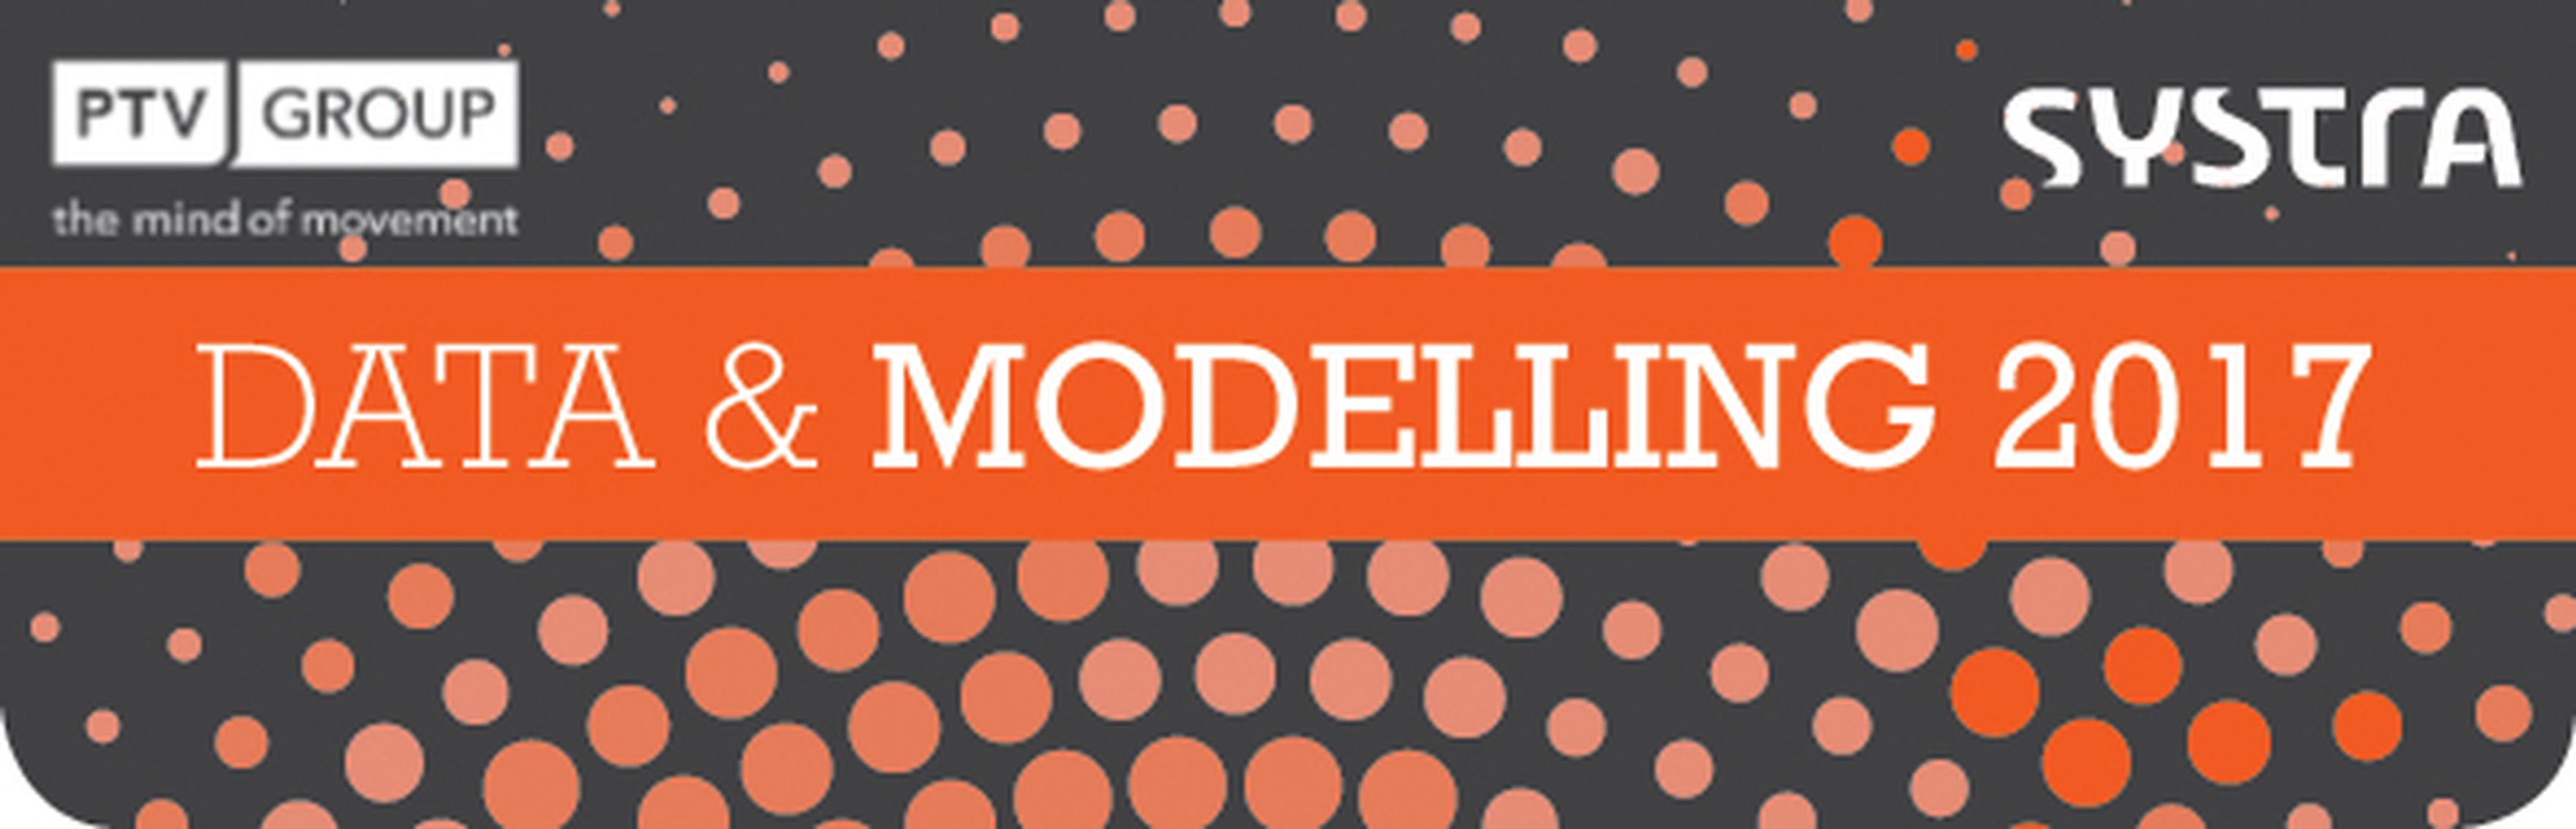 Data & Modelling 2017